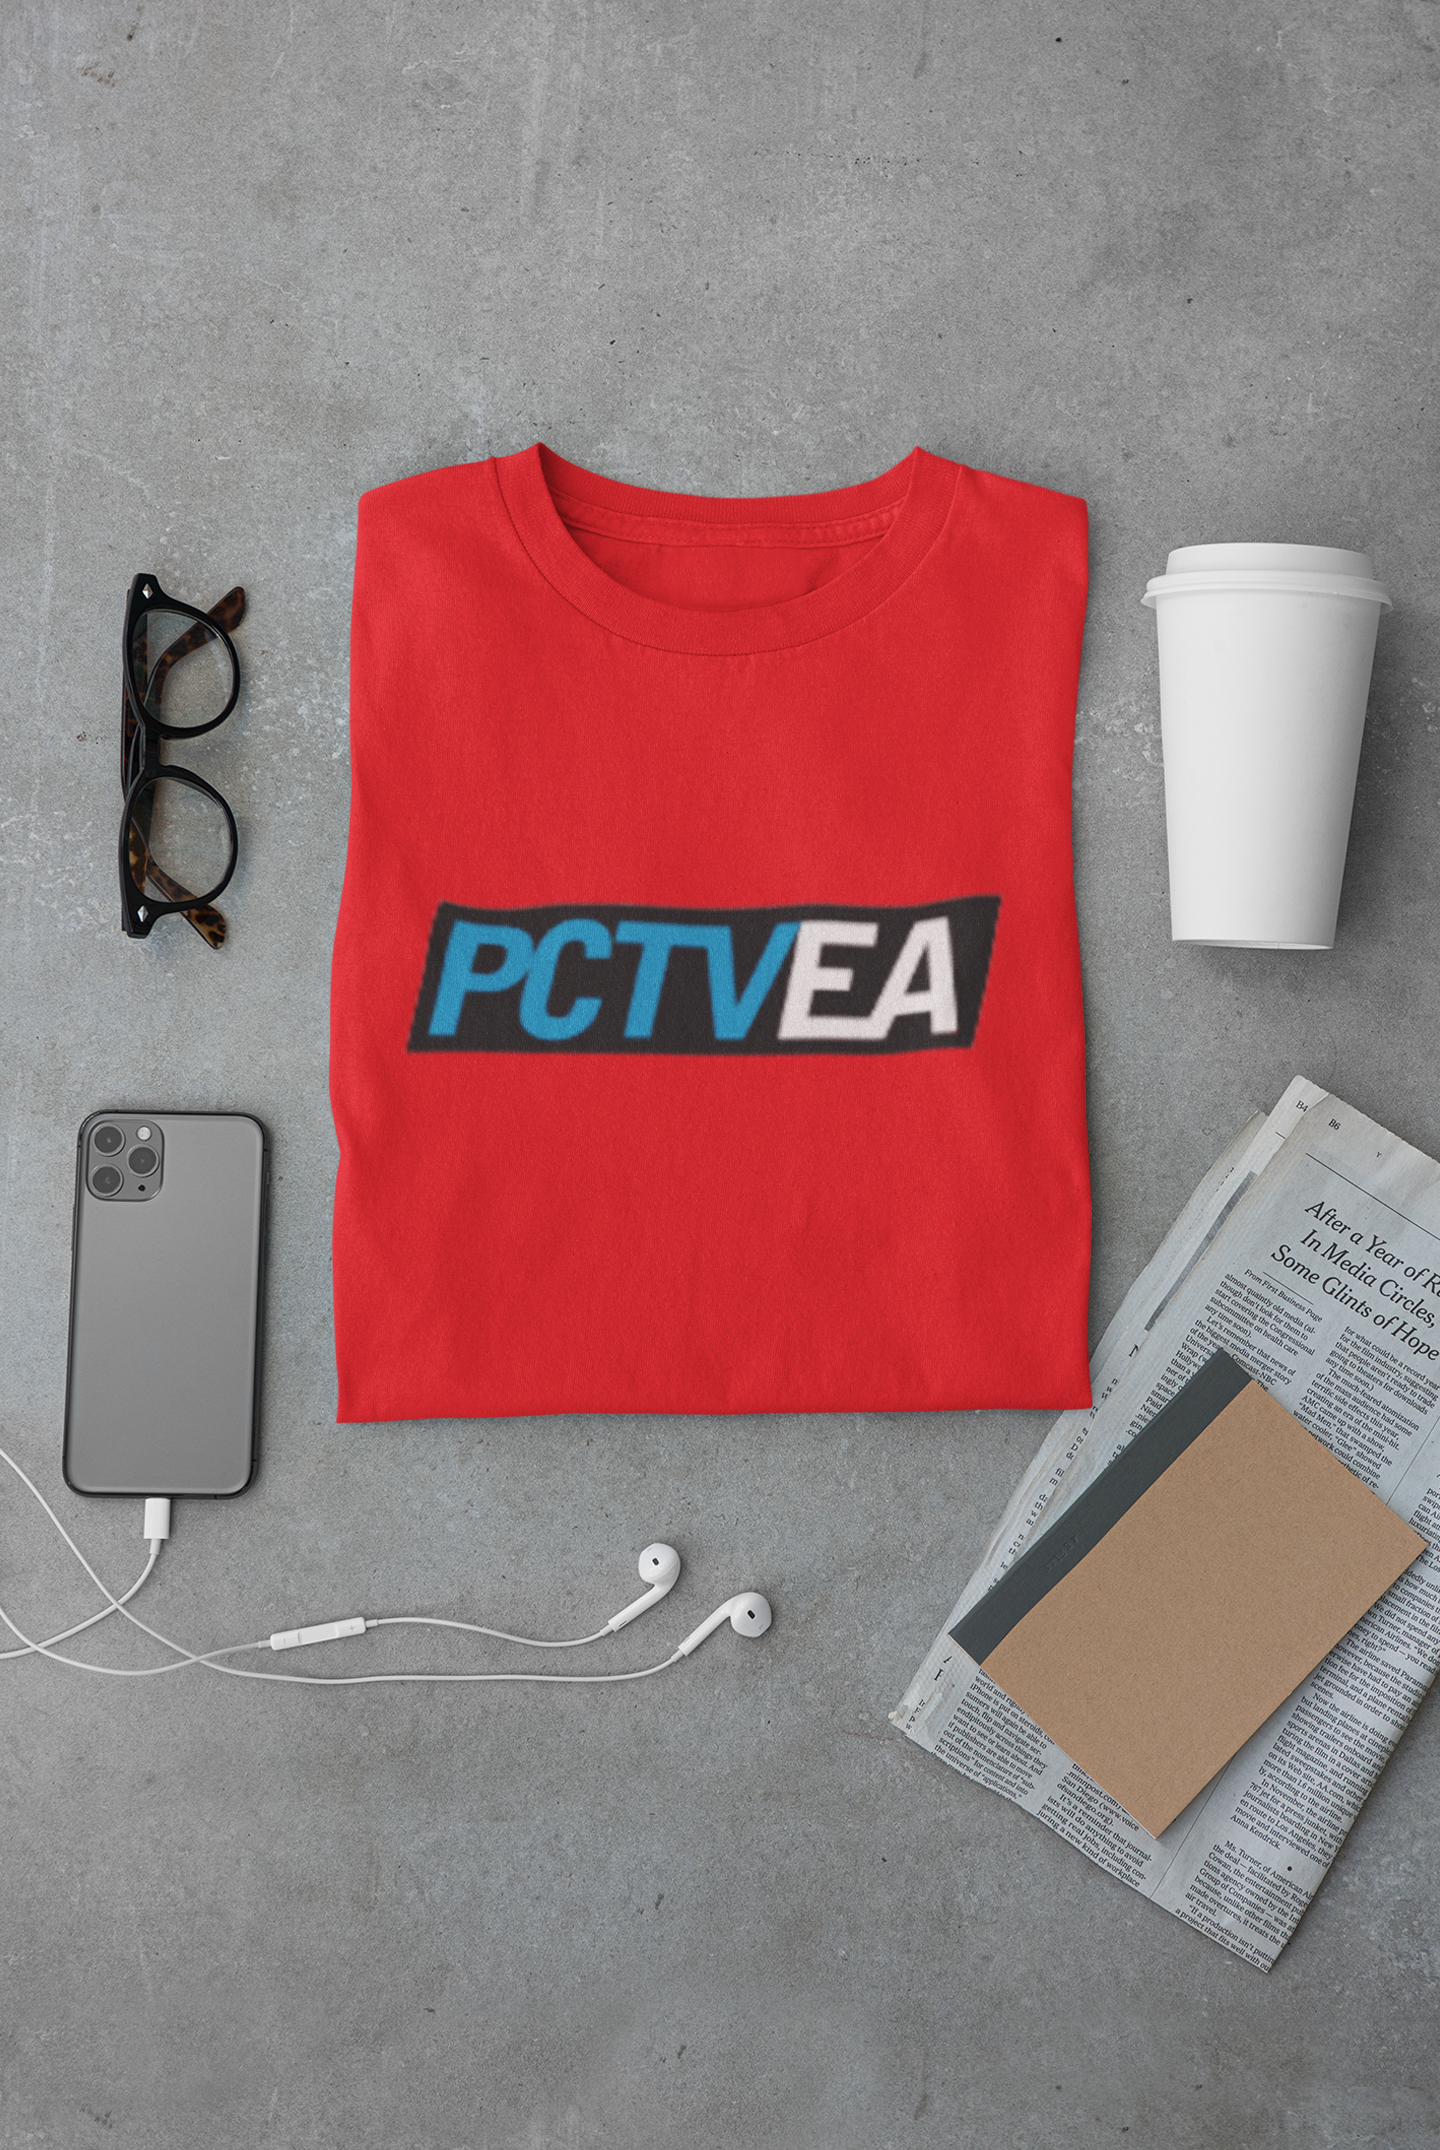 PCTVEA